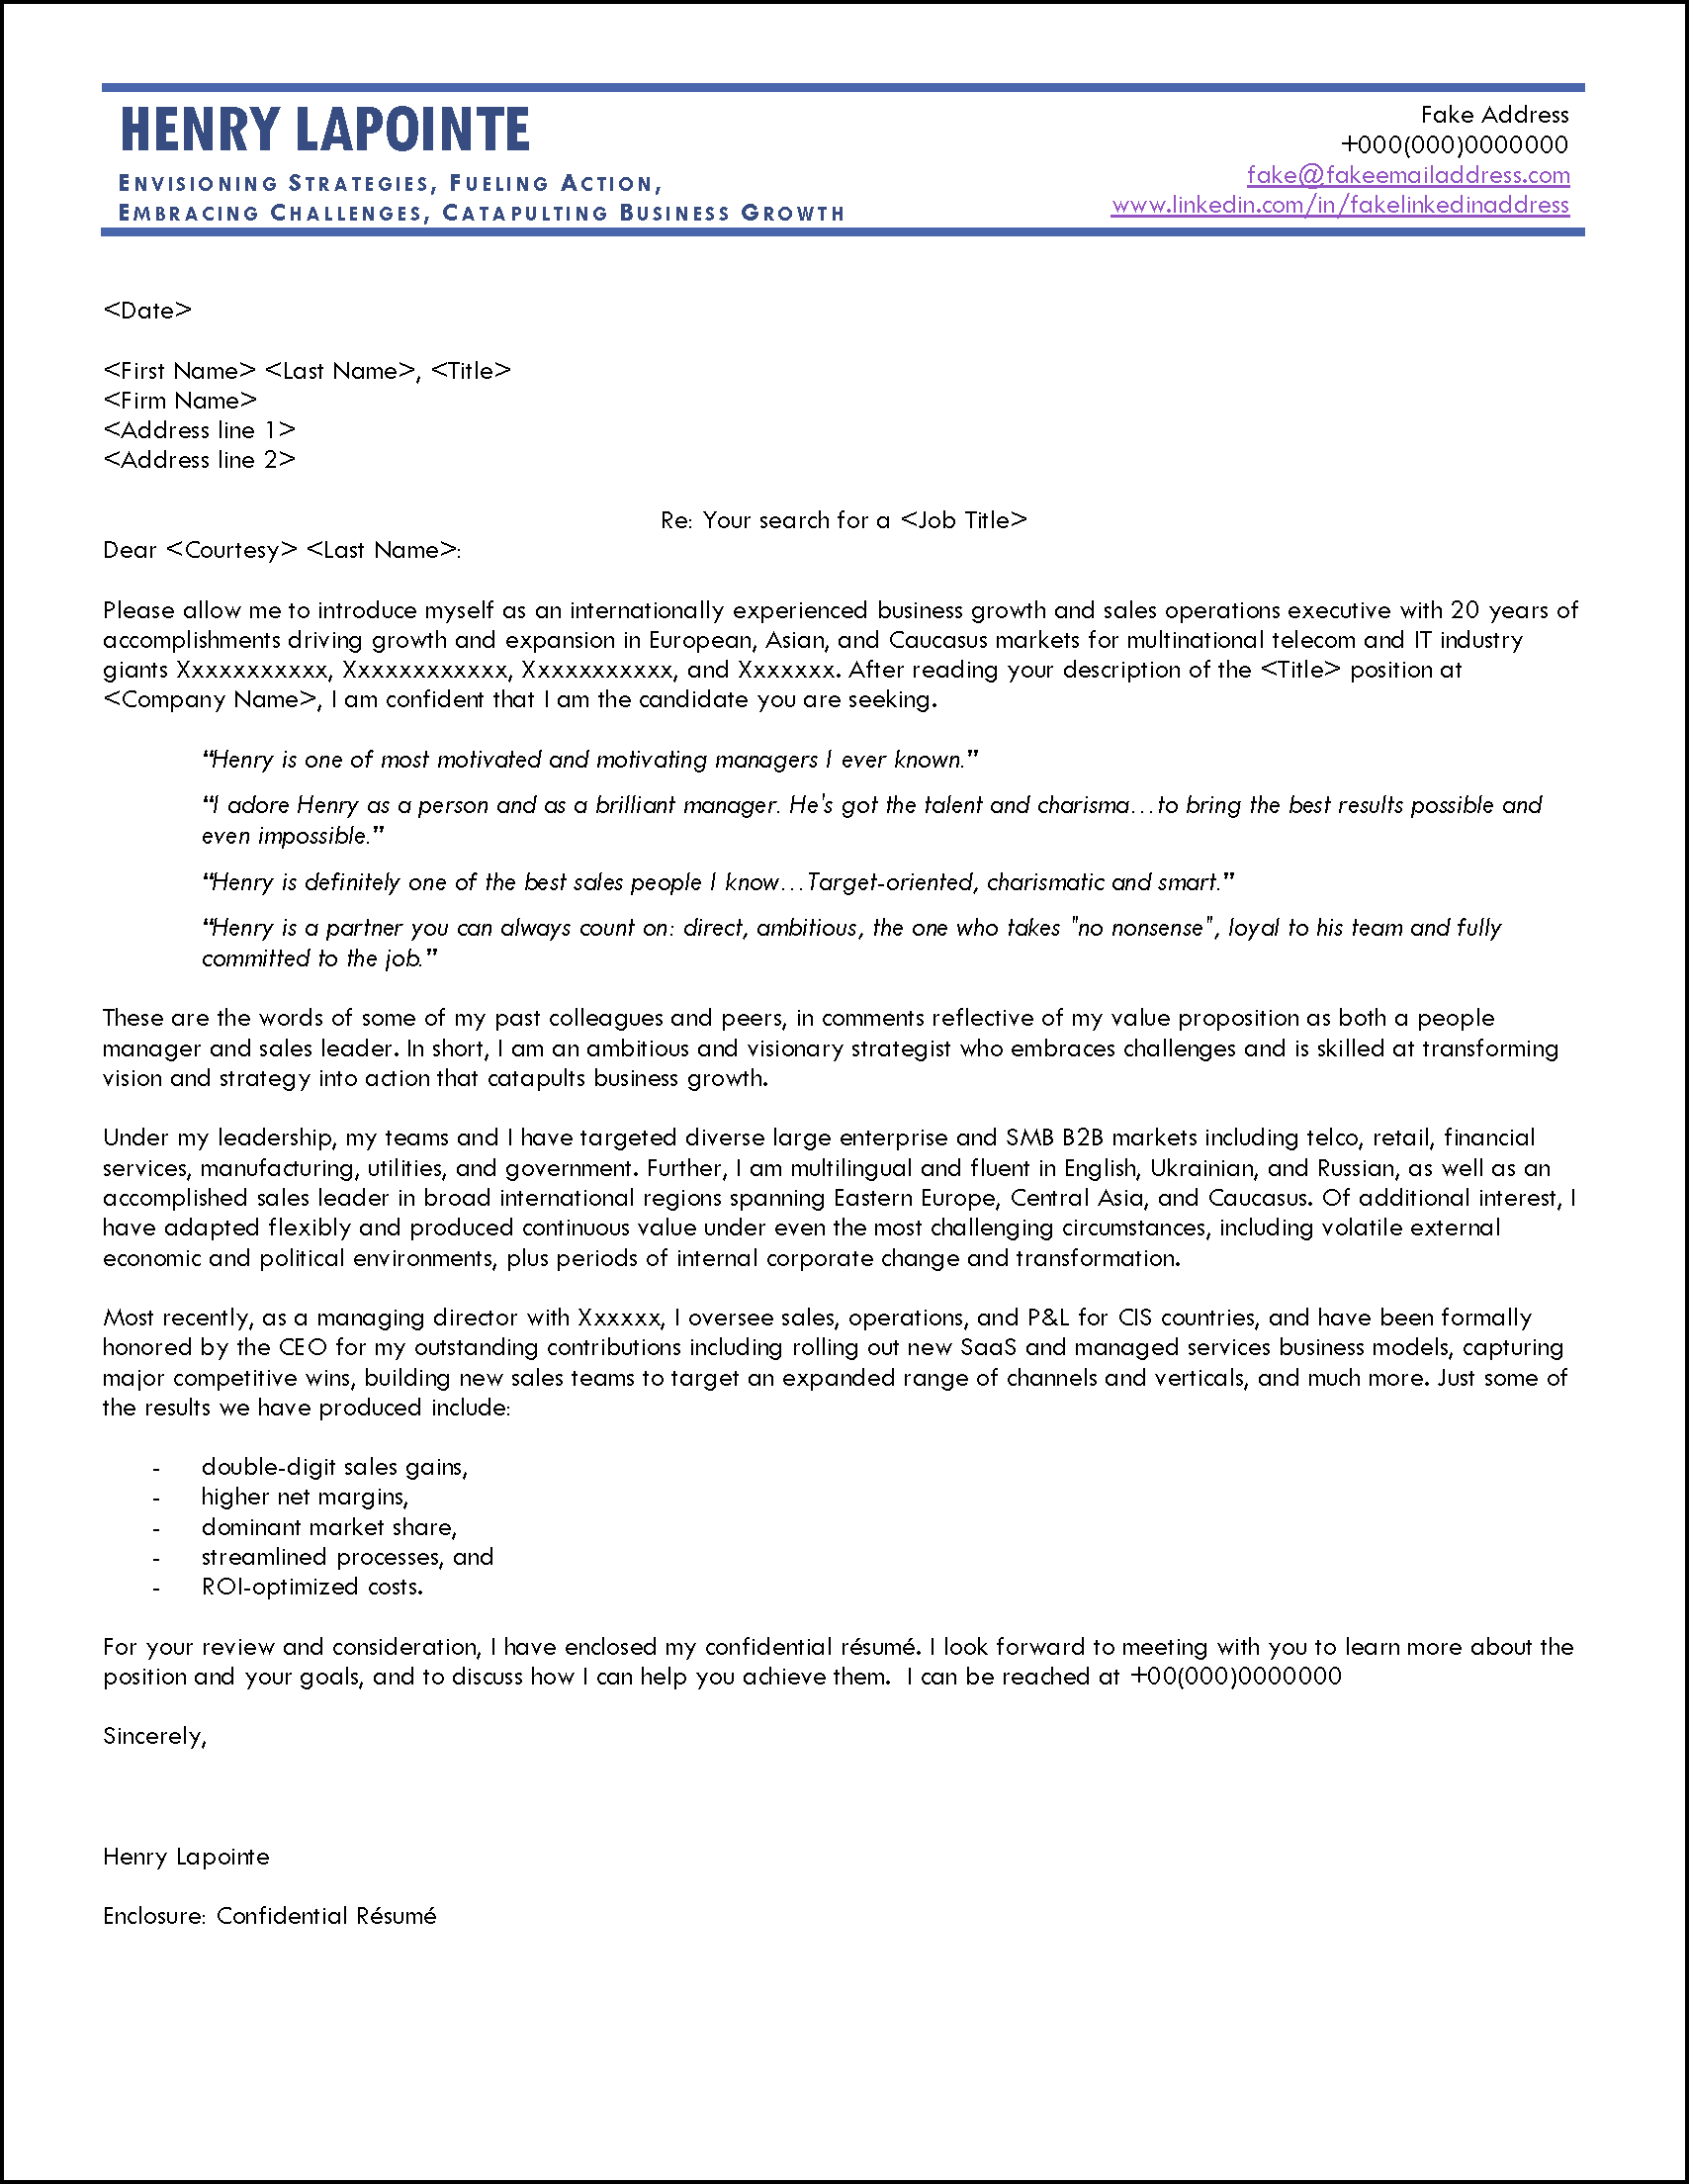 sample cover letter responding to job posting